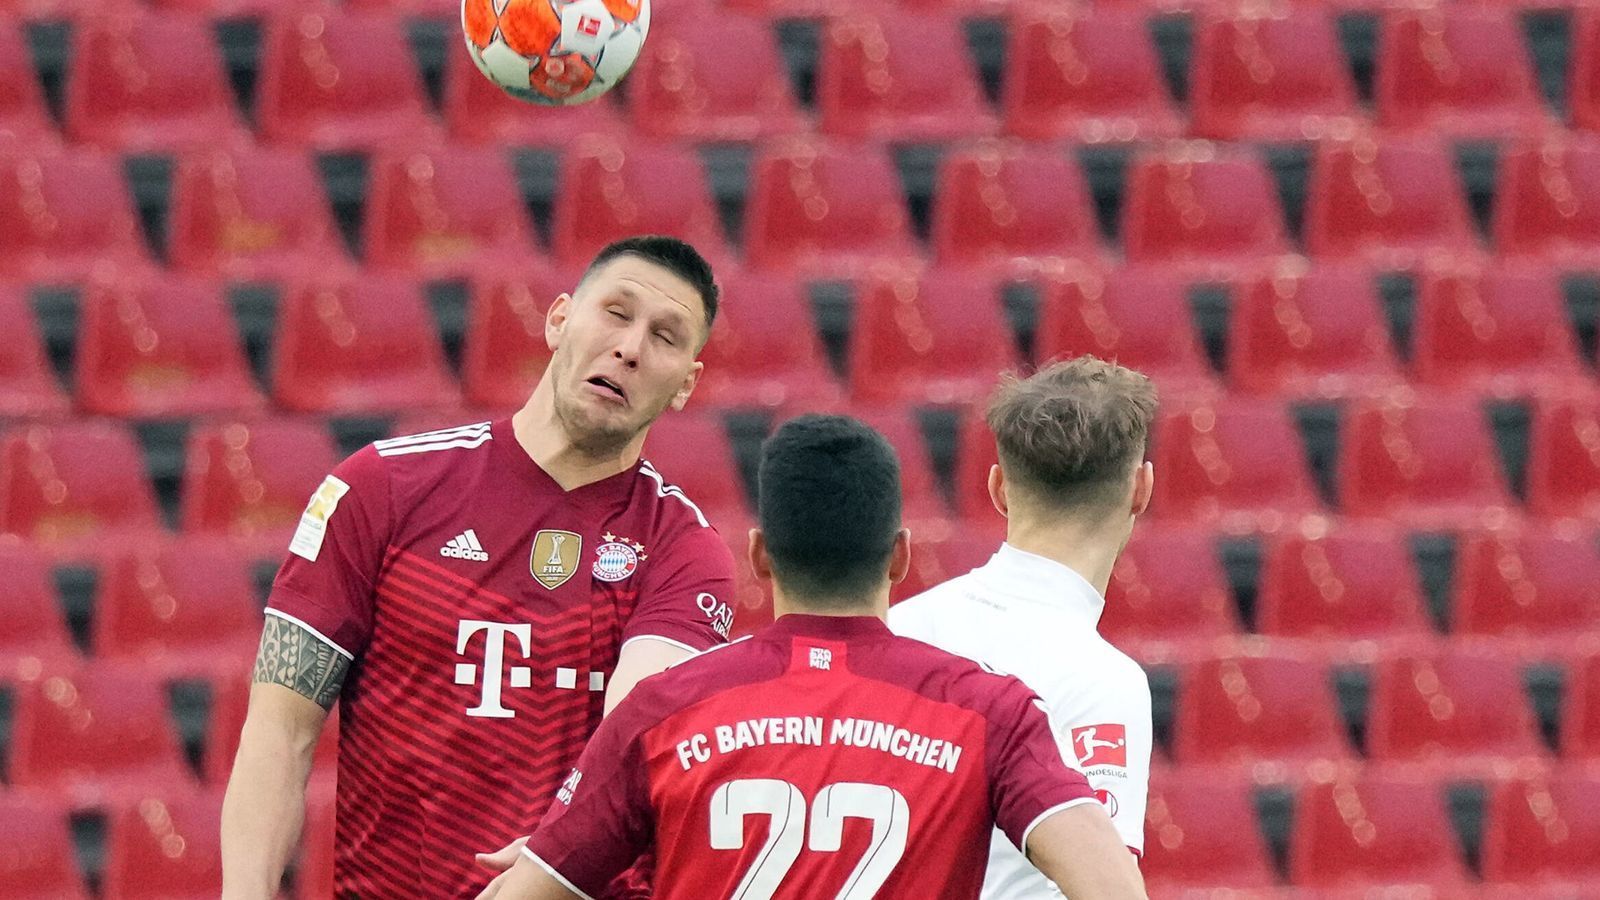 
                <strong>Niklas Süle</strong><br>
                Mit einem schlampigen Abspiel bietet der DFB-Nationalspieler Köln beinahe früh eine Chance. Ansonsten präsentiert sich Süle überwiegend sicher und mit guten Bewegungen, ist jedoch bei einer Kopfballgelegenheit von Modeste nur Statist. Auch im Vorwärtsgang fällt er auf. ran-Note: 3
              